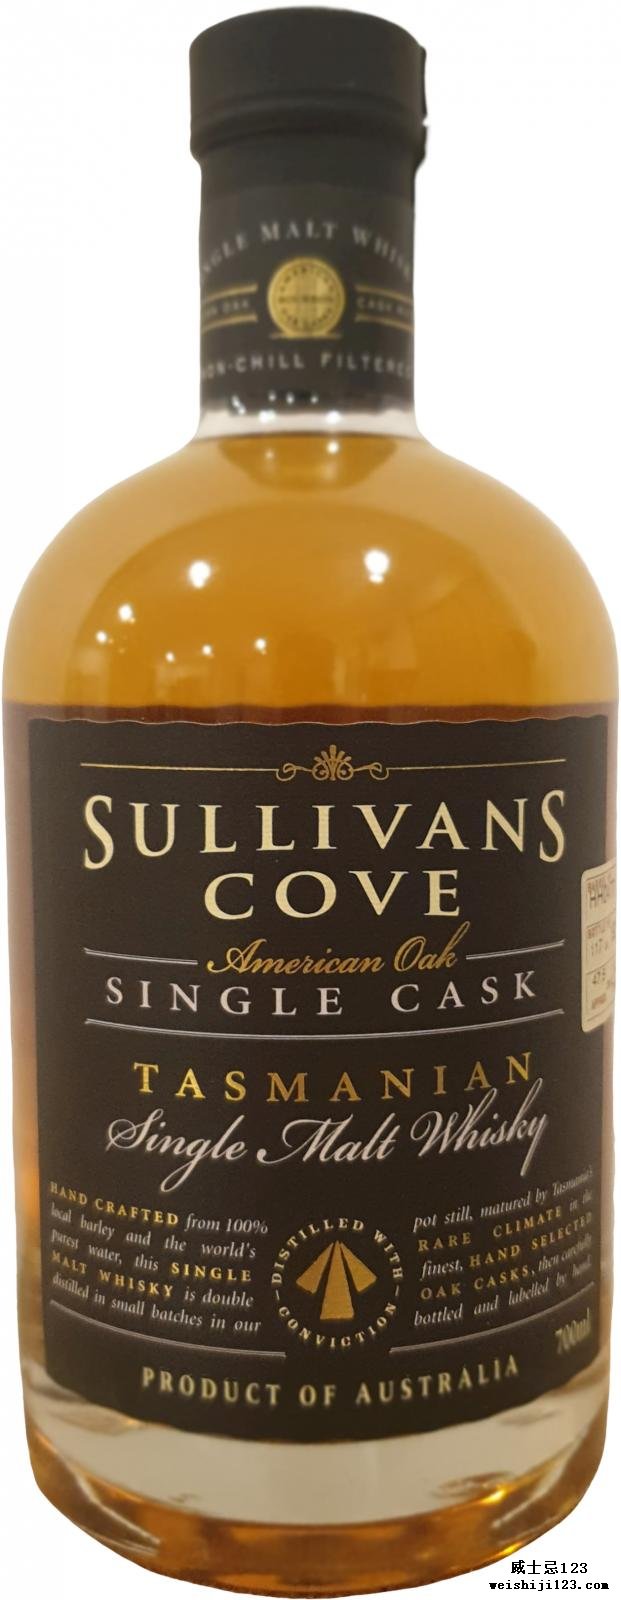 Sullivans Cove 2000